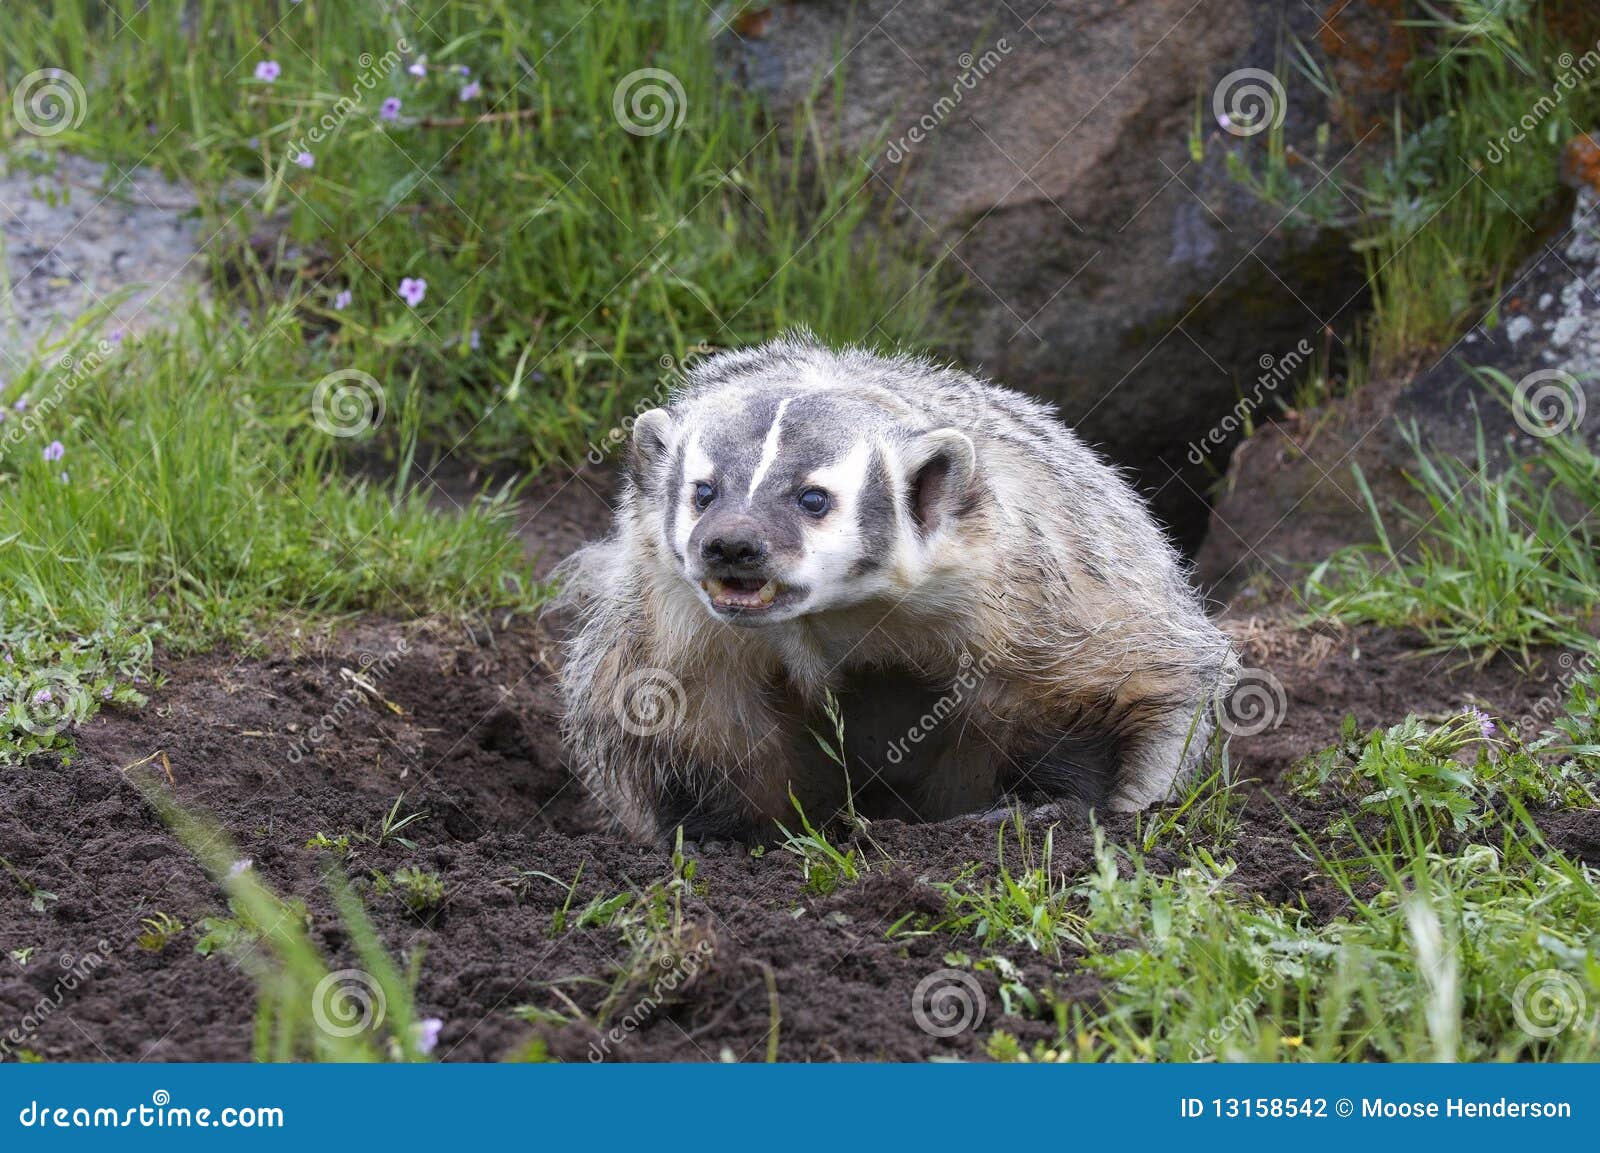 american badger at burrow